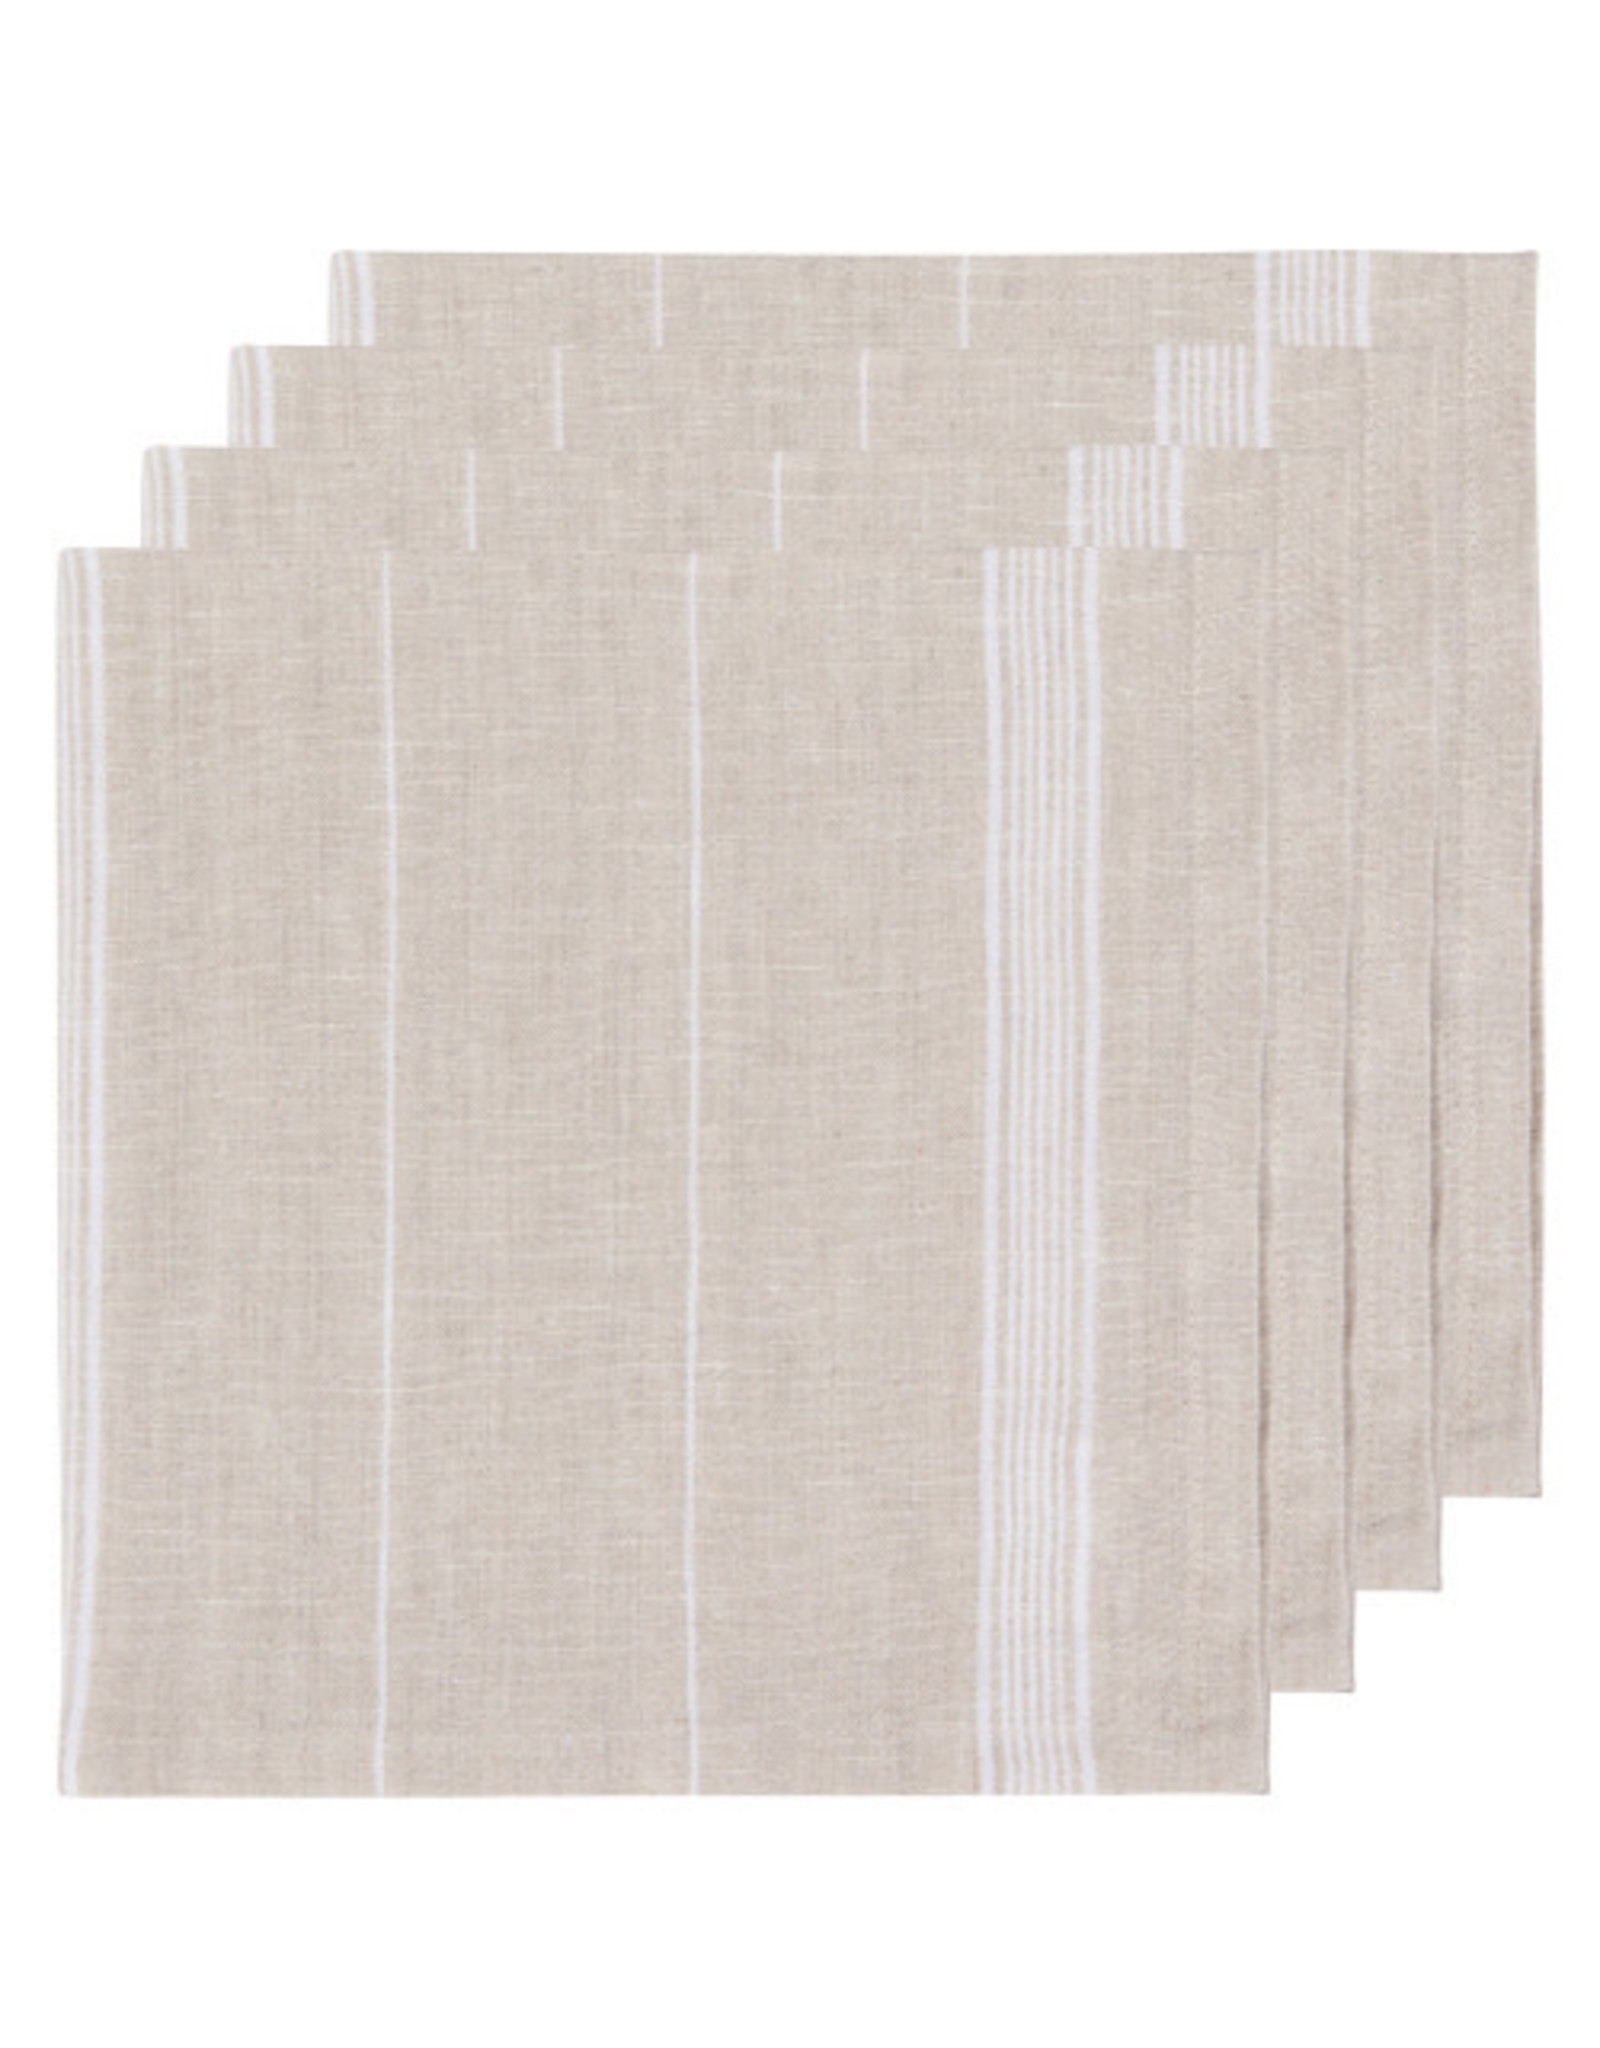 White Maison Stripe Linen Napkins - Set of 4